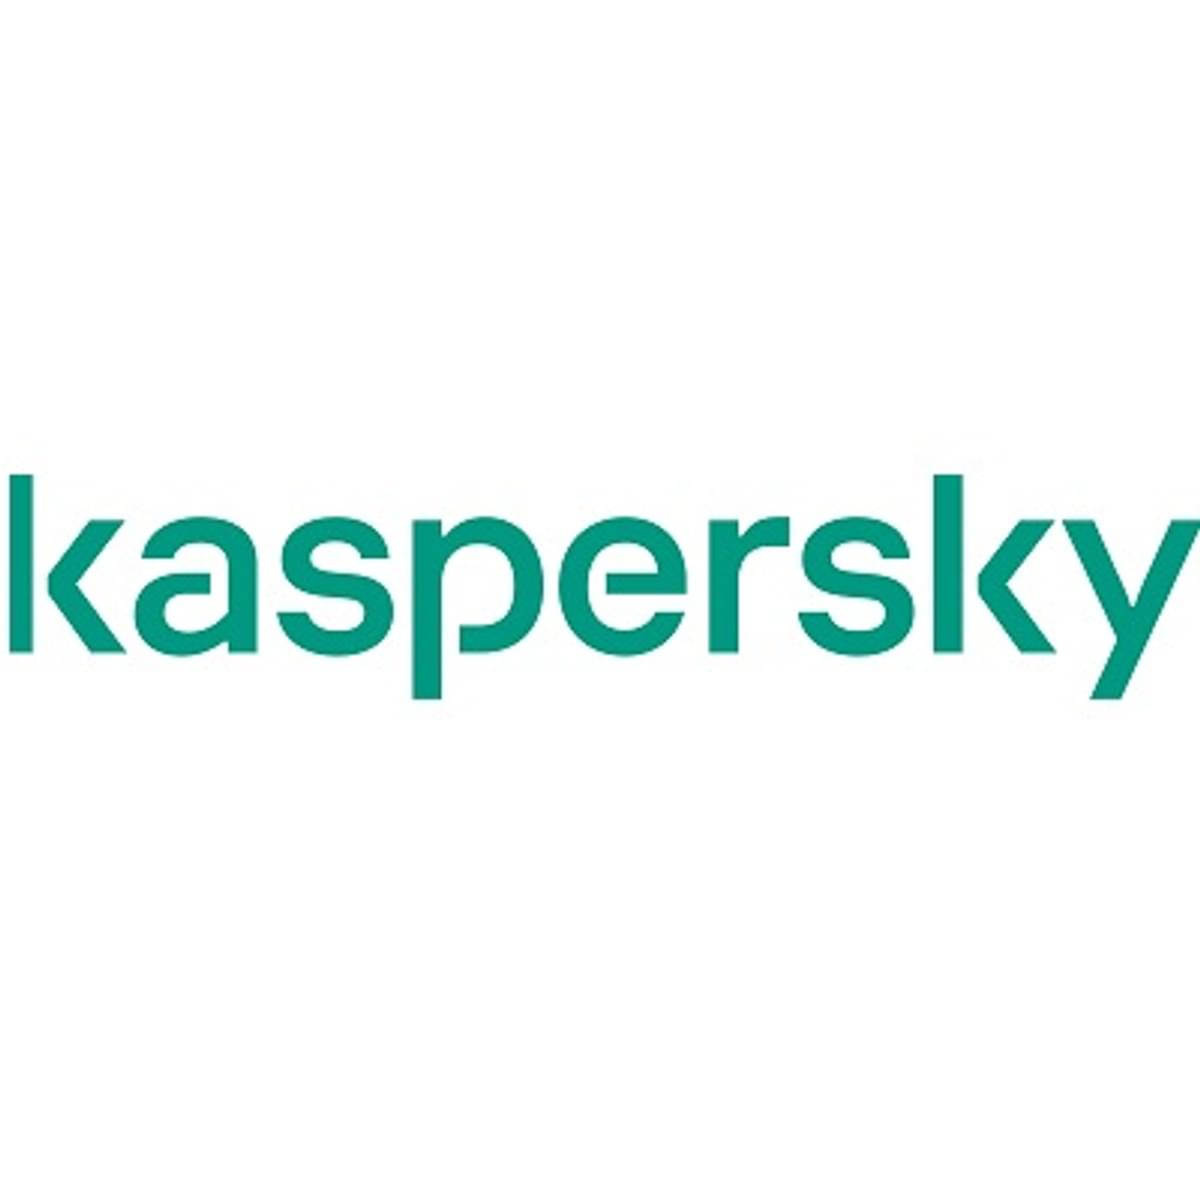 Telecomoperators kunnen smart home-apparaten beschermen met Kaspersky Smart Home Security image